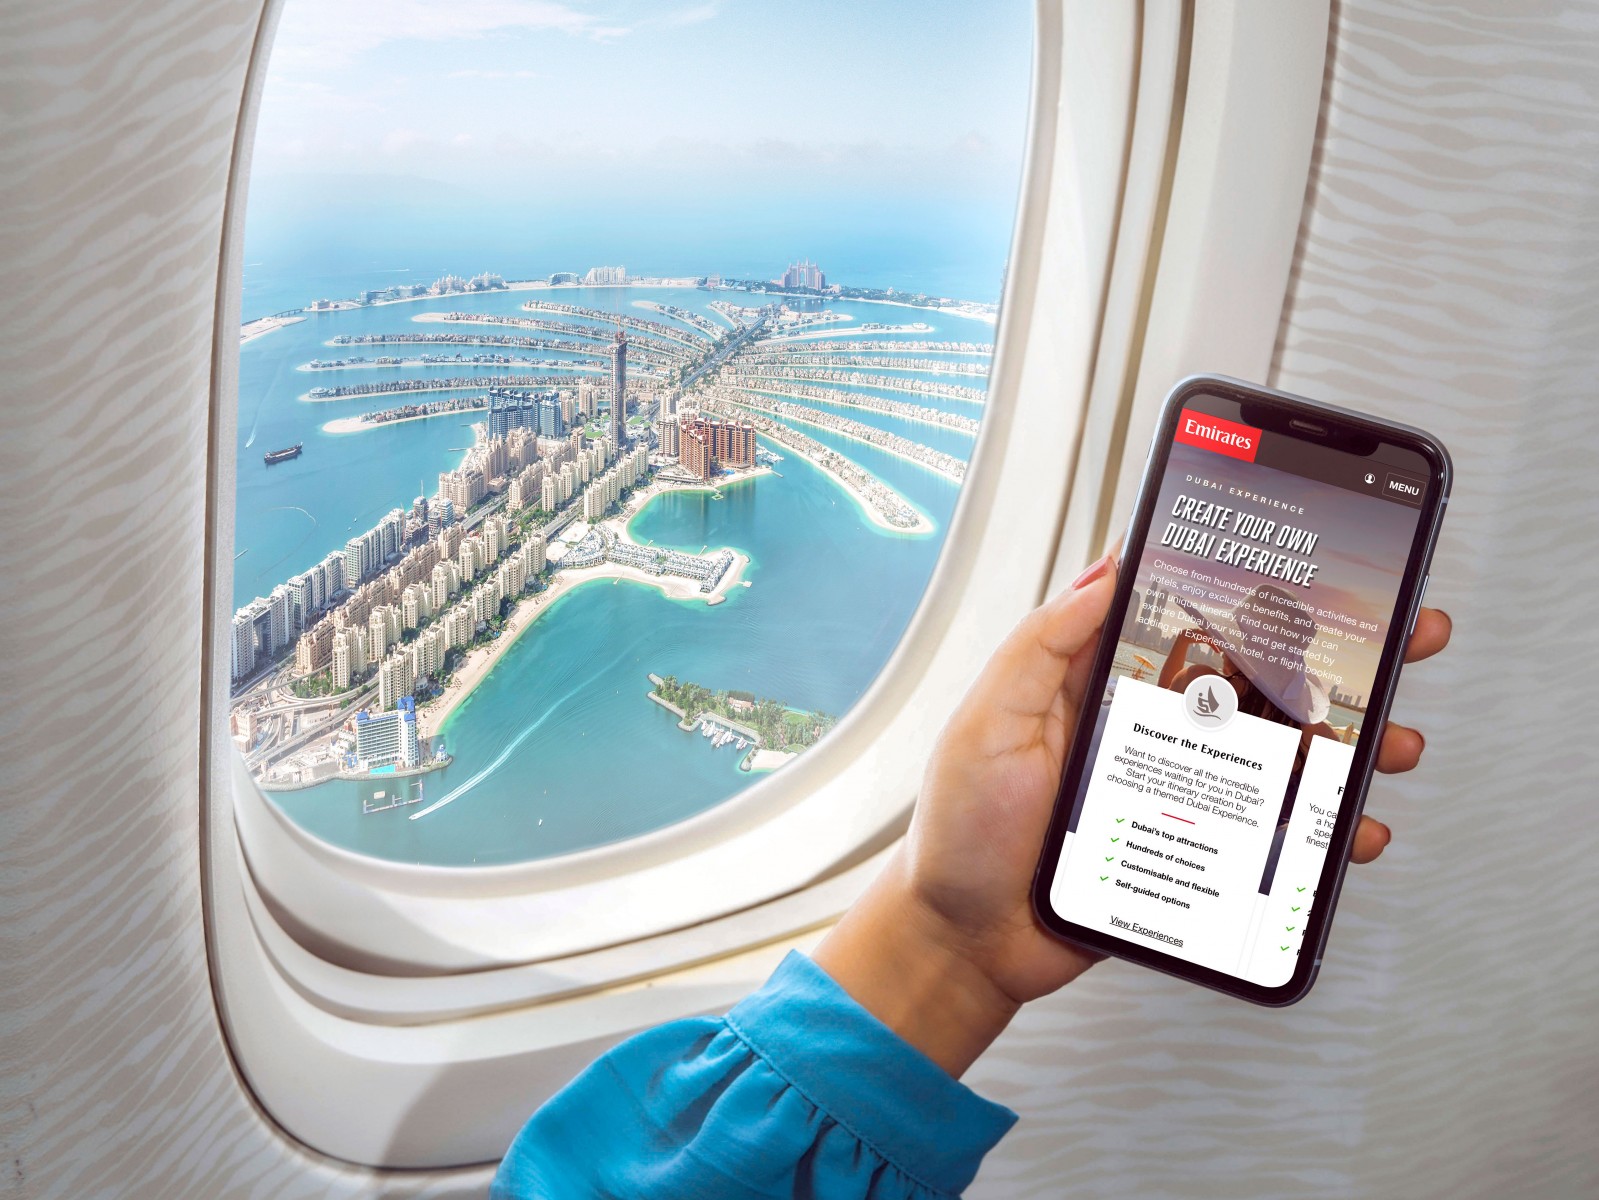 Emirates führt eine leistungsstarke Plattform ein, auf der Kunden Reiserouten nach Dubai und den Vereinigten Arabischen Emiraten nach Bedarf durchsuchen und buchen können